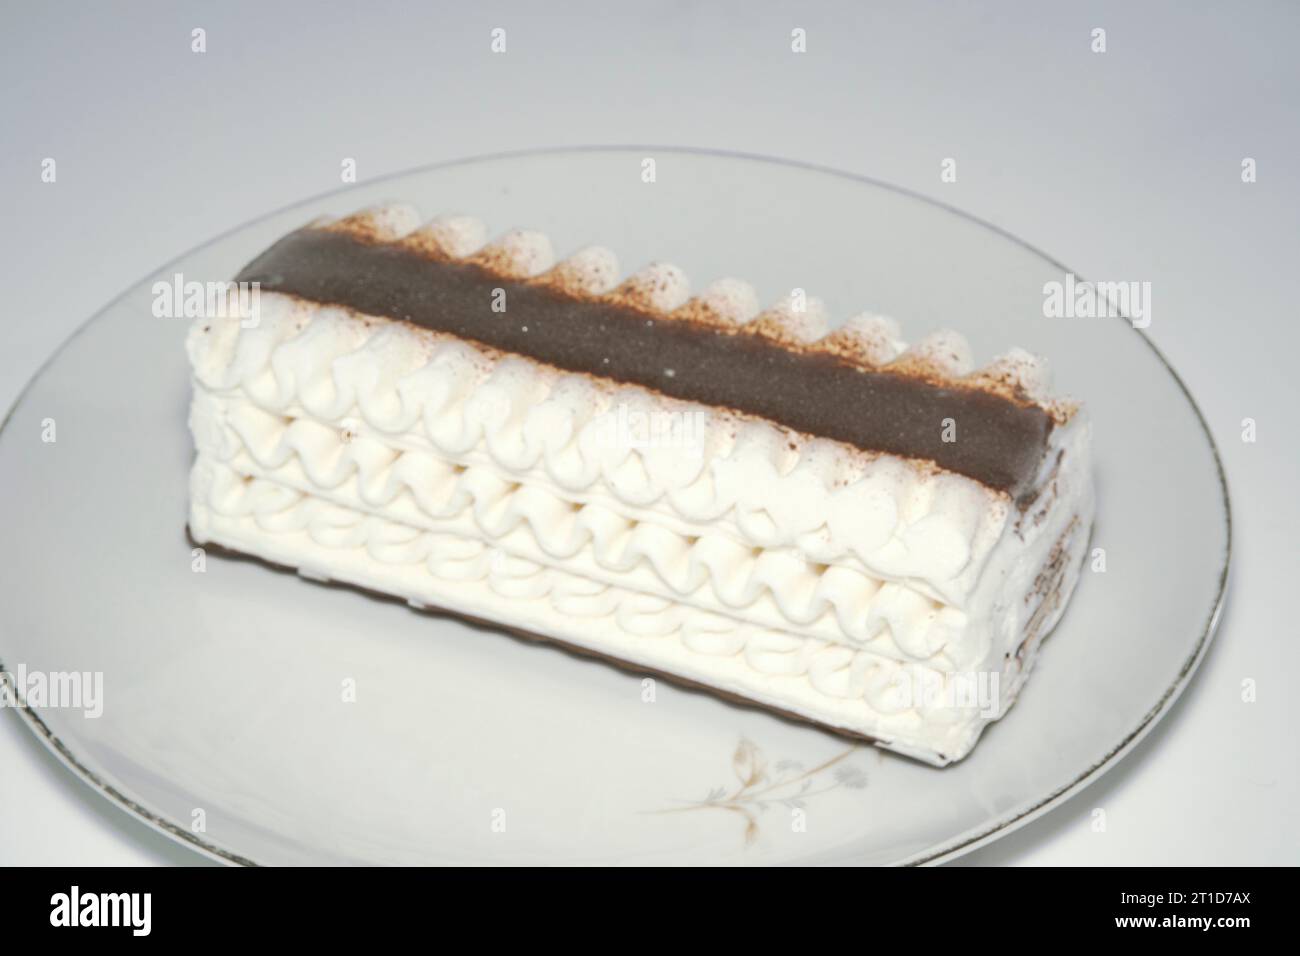 Un primo piano del dessert Gourmet alla vaniglia con strati di cioccolato pregiato dal design elegante. Foto Stock